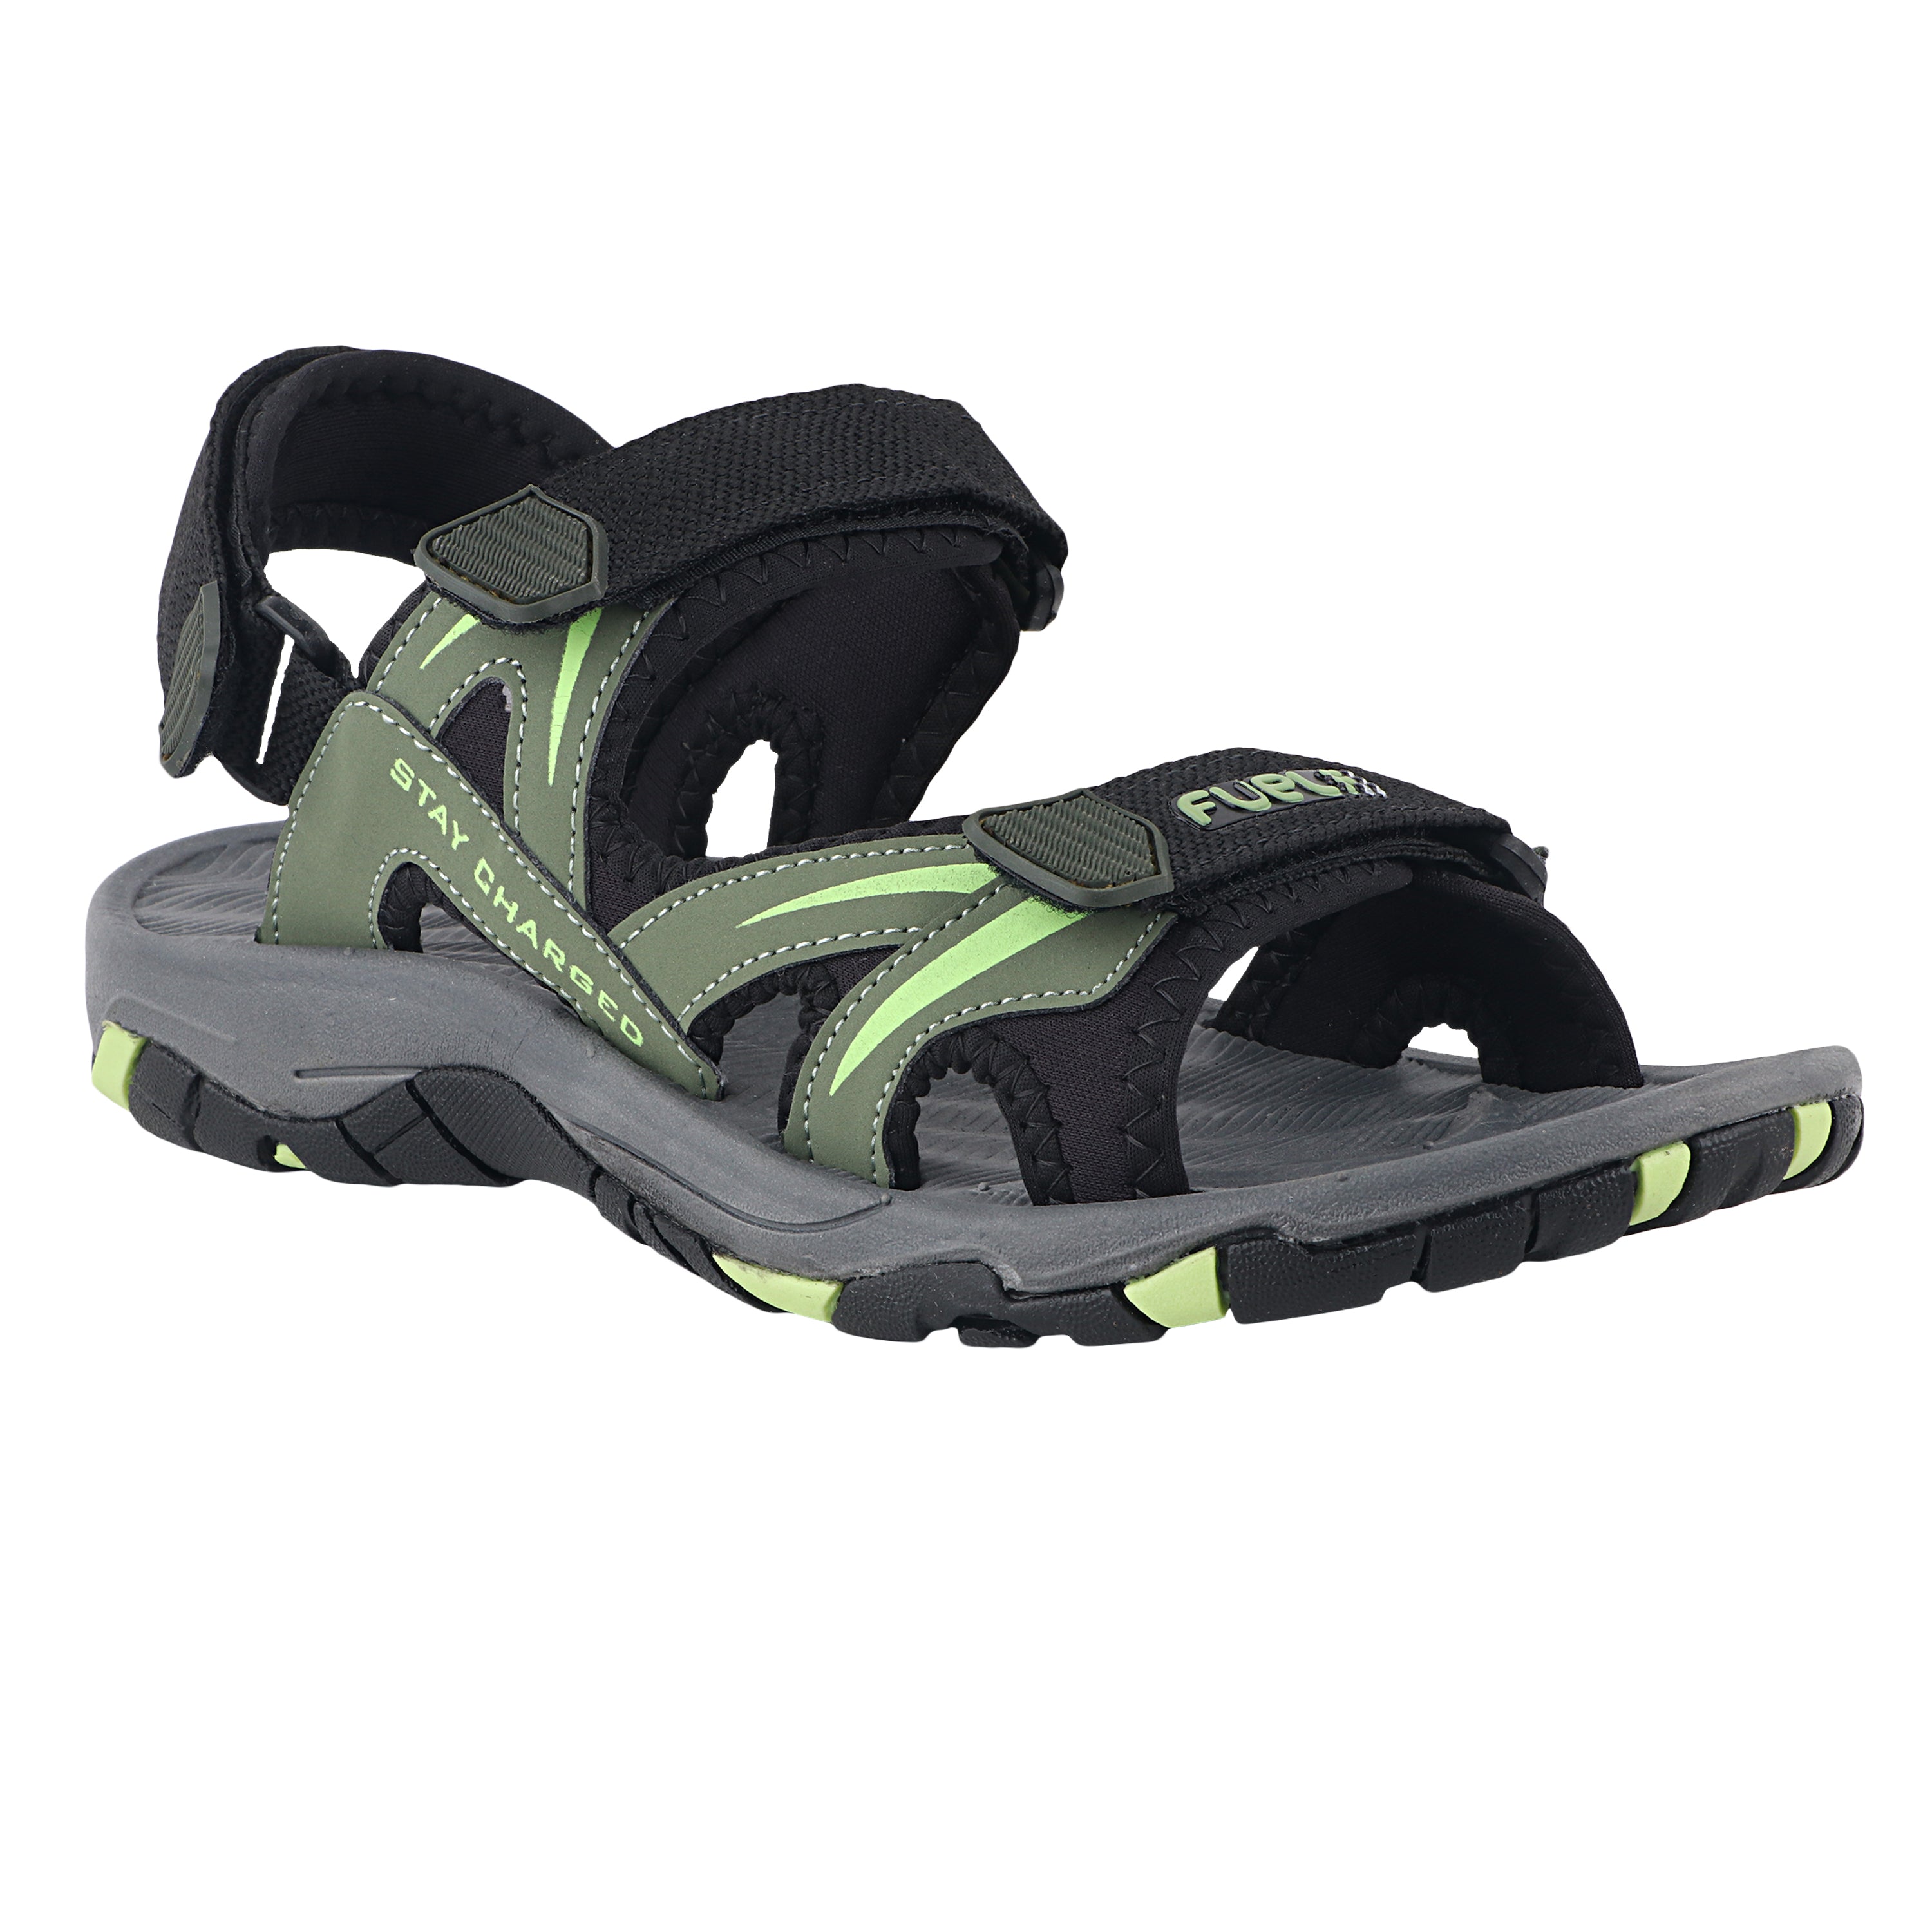 Fuel Prime Sandals For Men's (Olive-P Green)